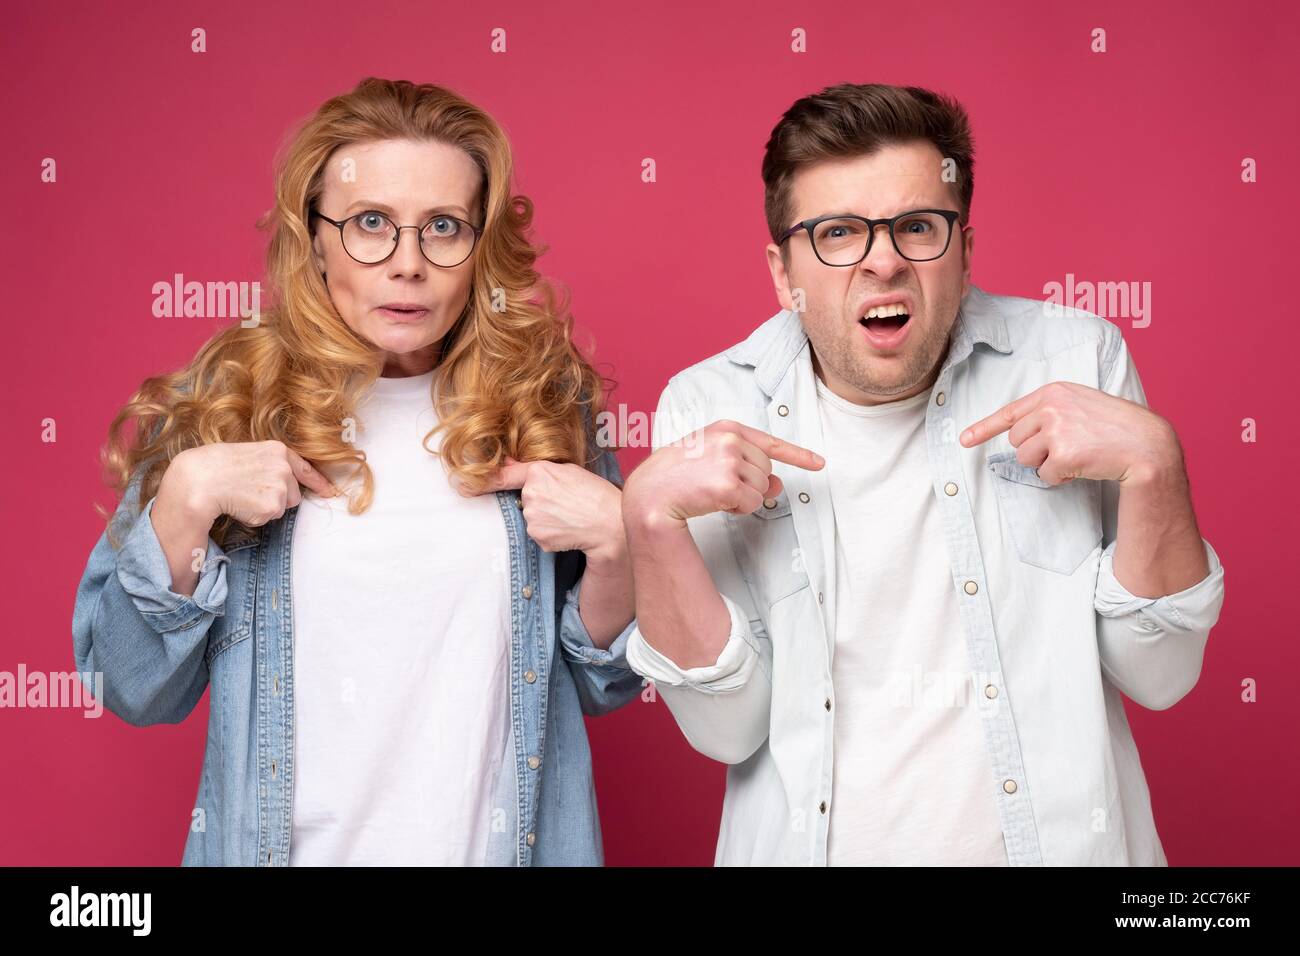 Mann und Frau zeigen mit den Fingern auf sich selbst und haben zweifelhaften Gesichtsausdruck Stockfoto